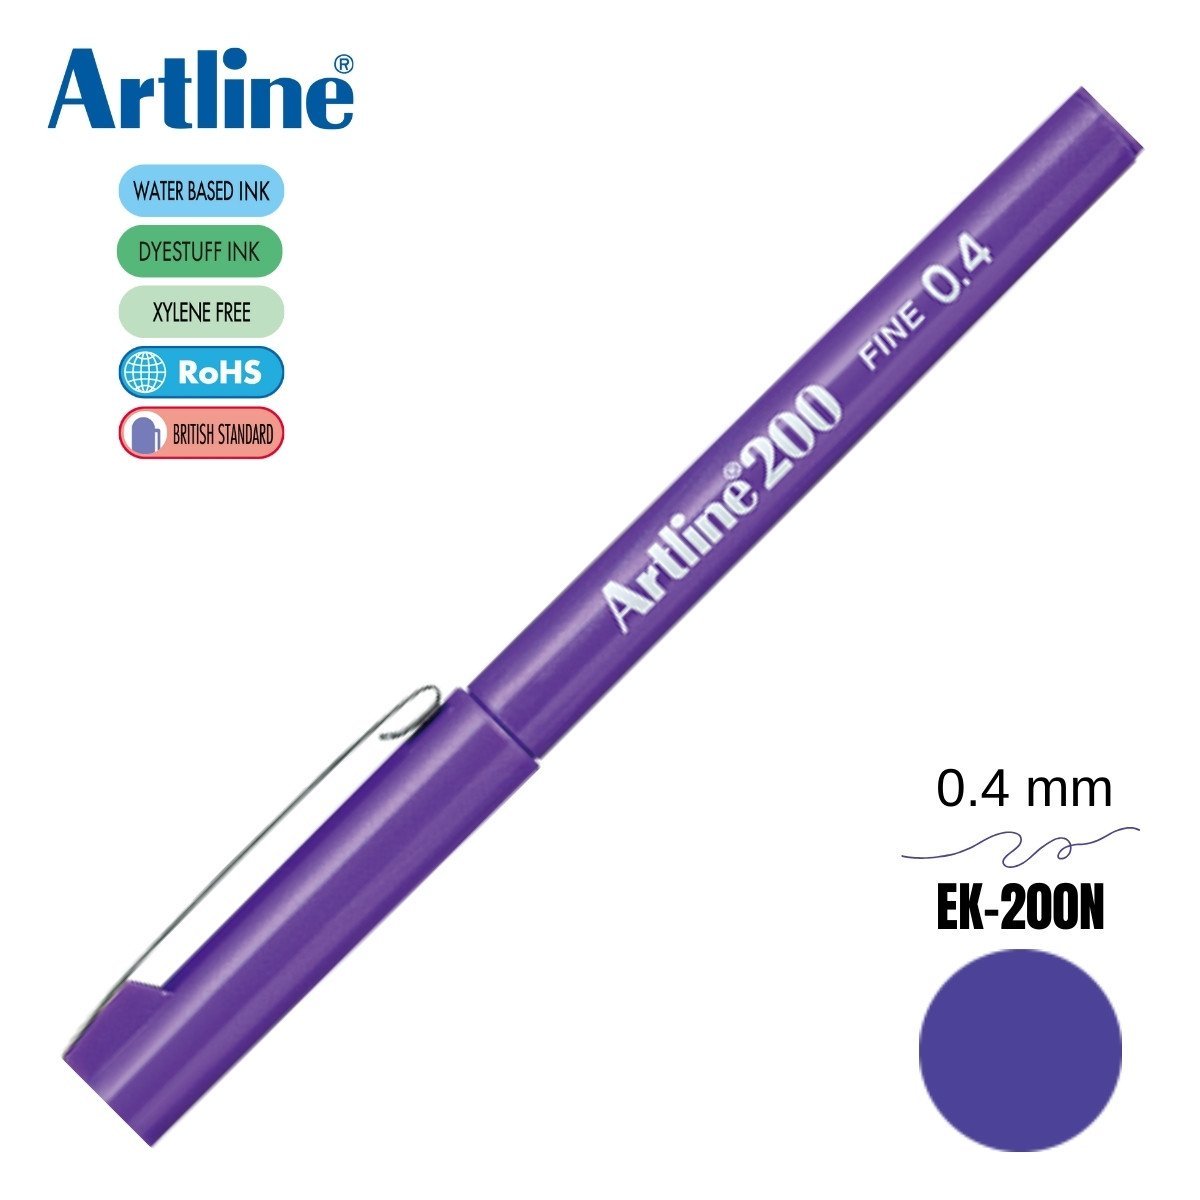 Artline 200 Fine Keçe Uçlu Yazı Kalemi 0.4mm Mor